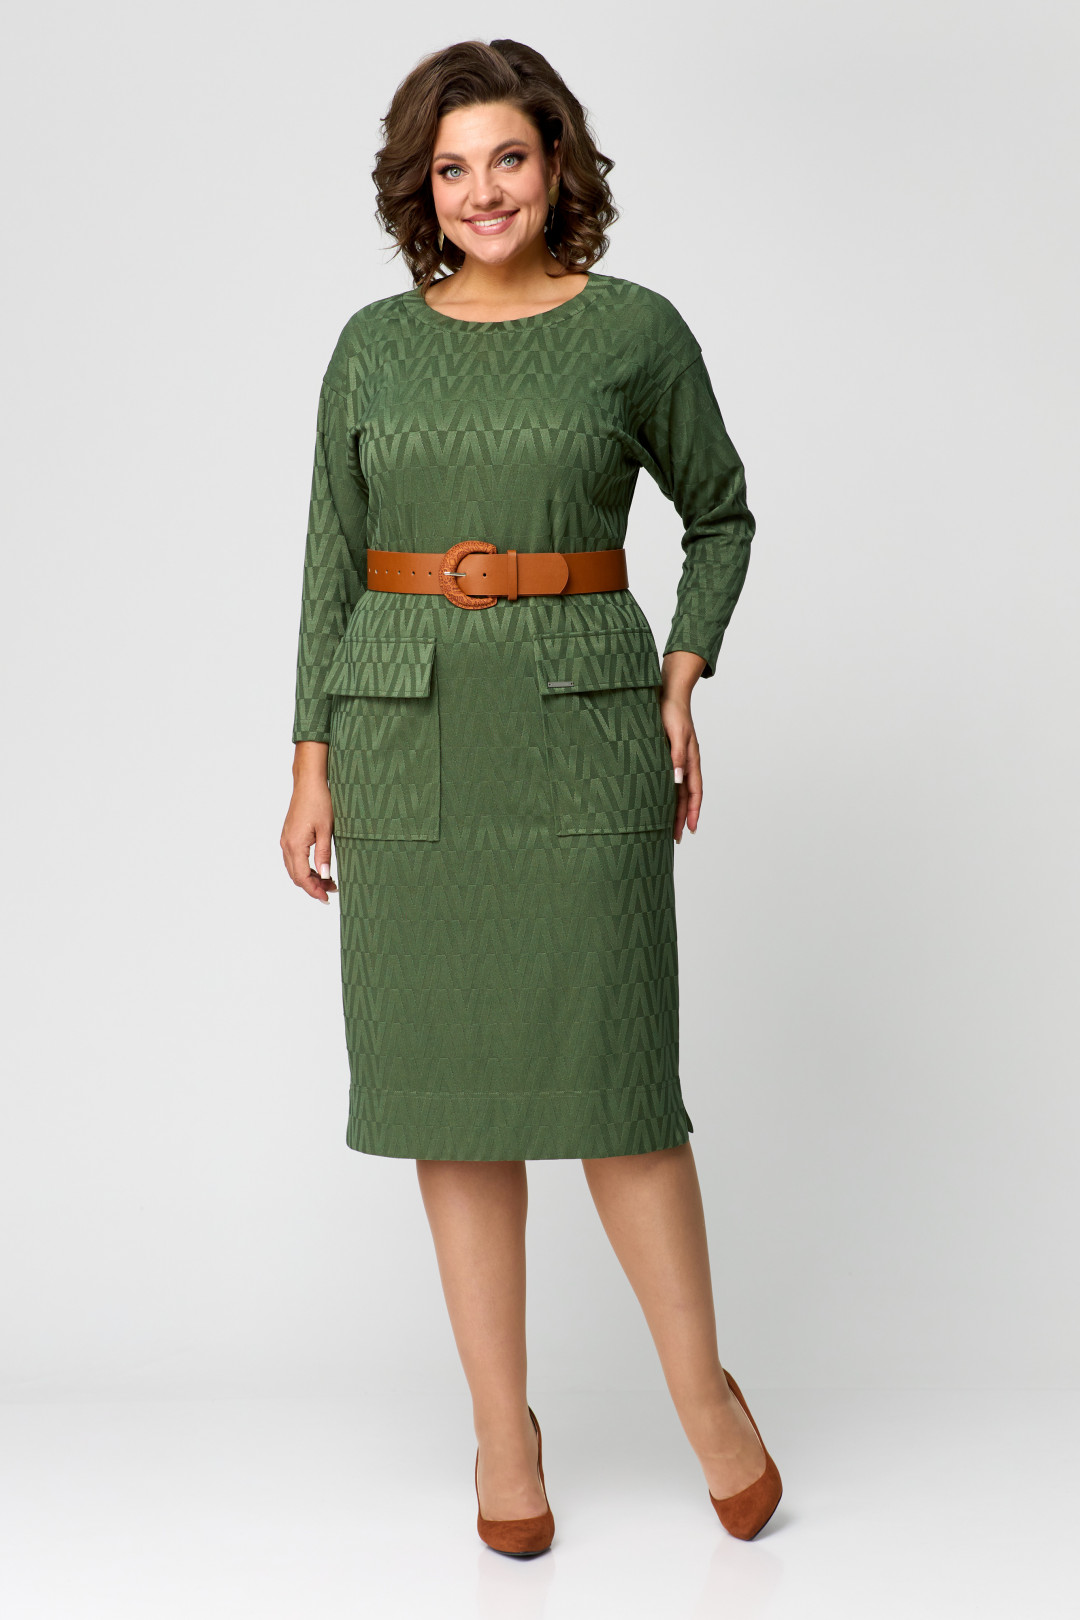 Платье Данаида 2197 зеленый